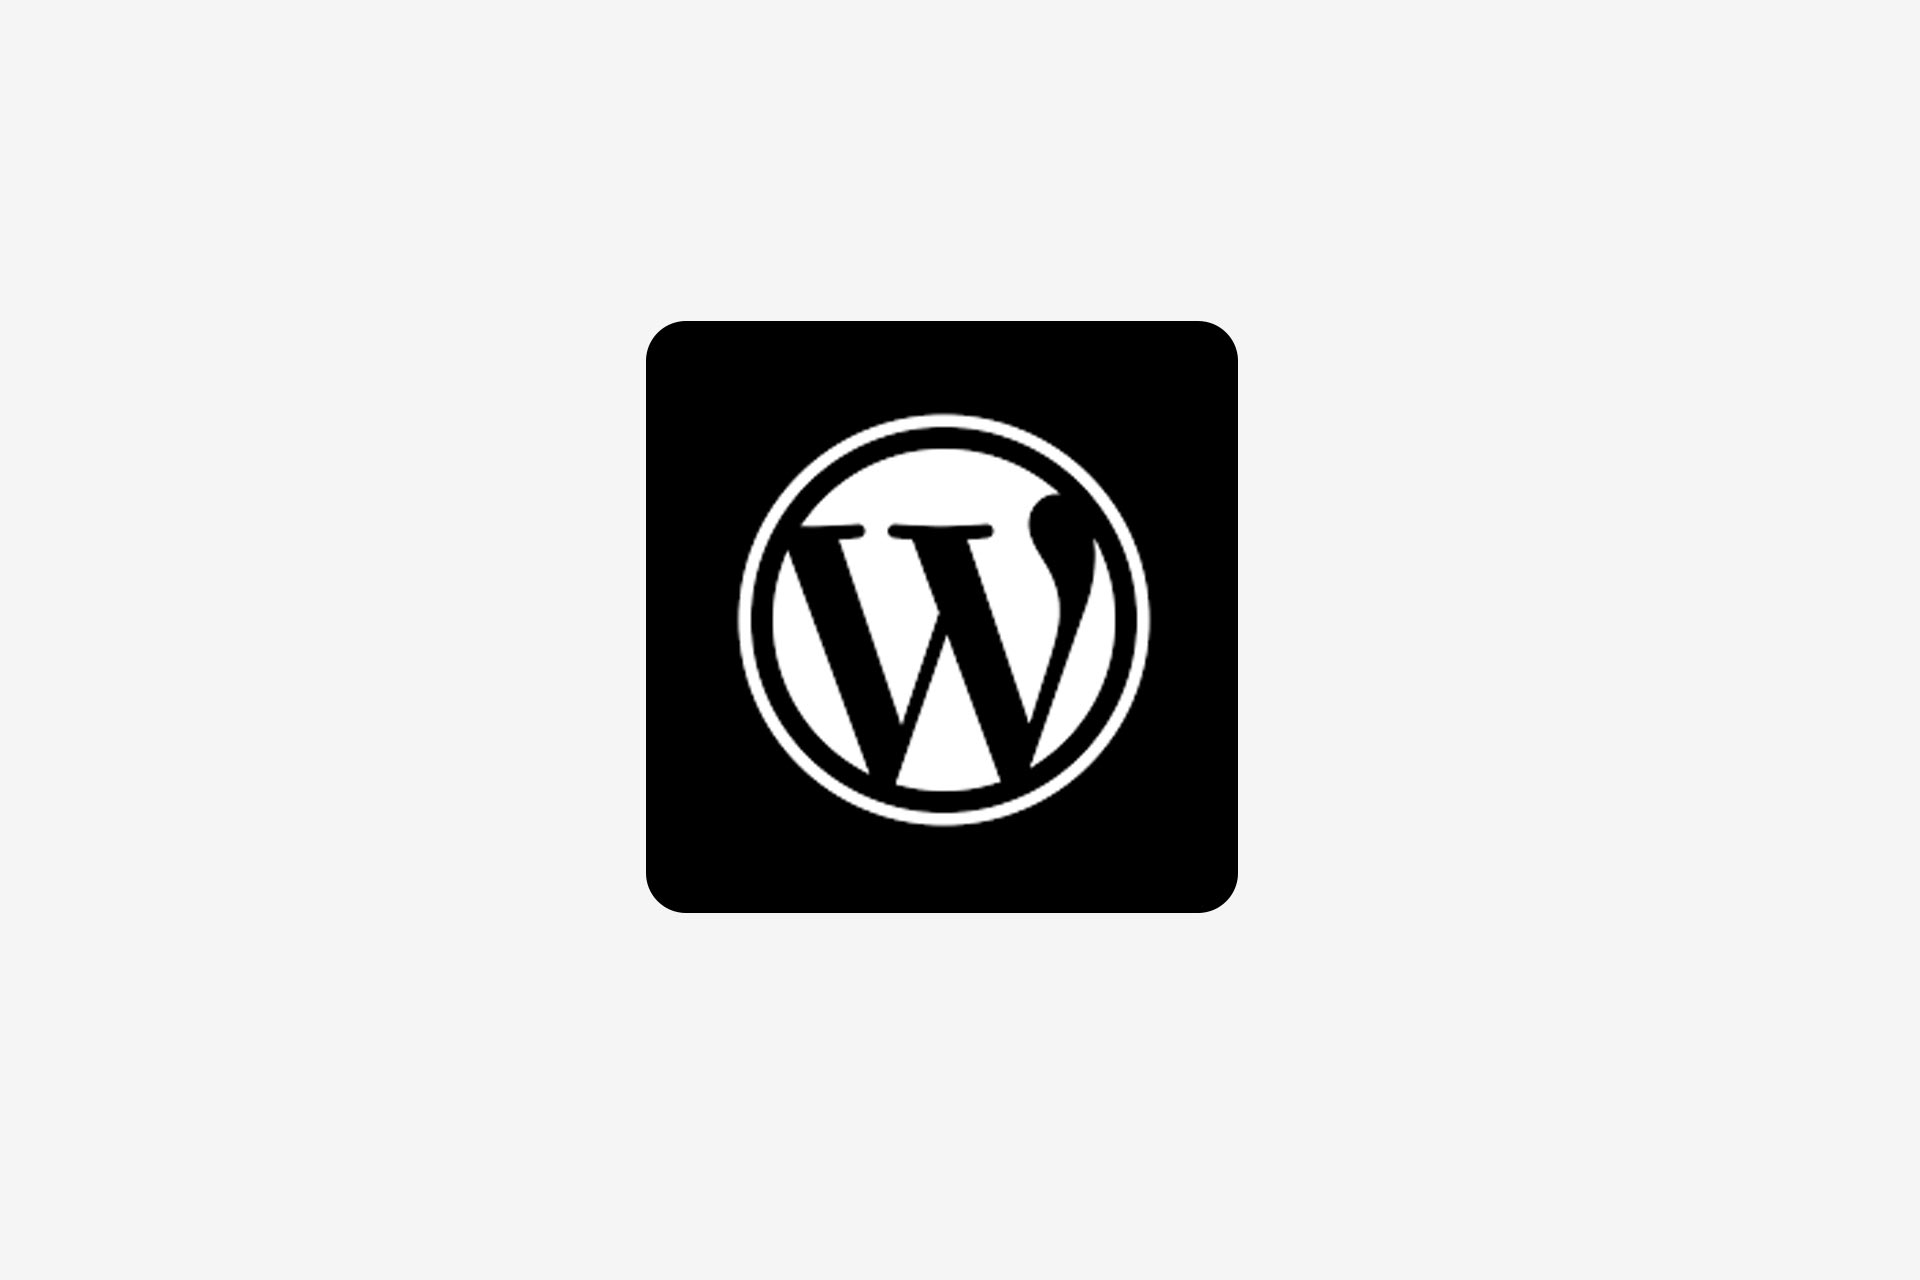 Wordpress pour la création de sites web facilement administrables